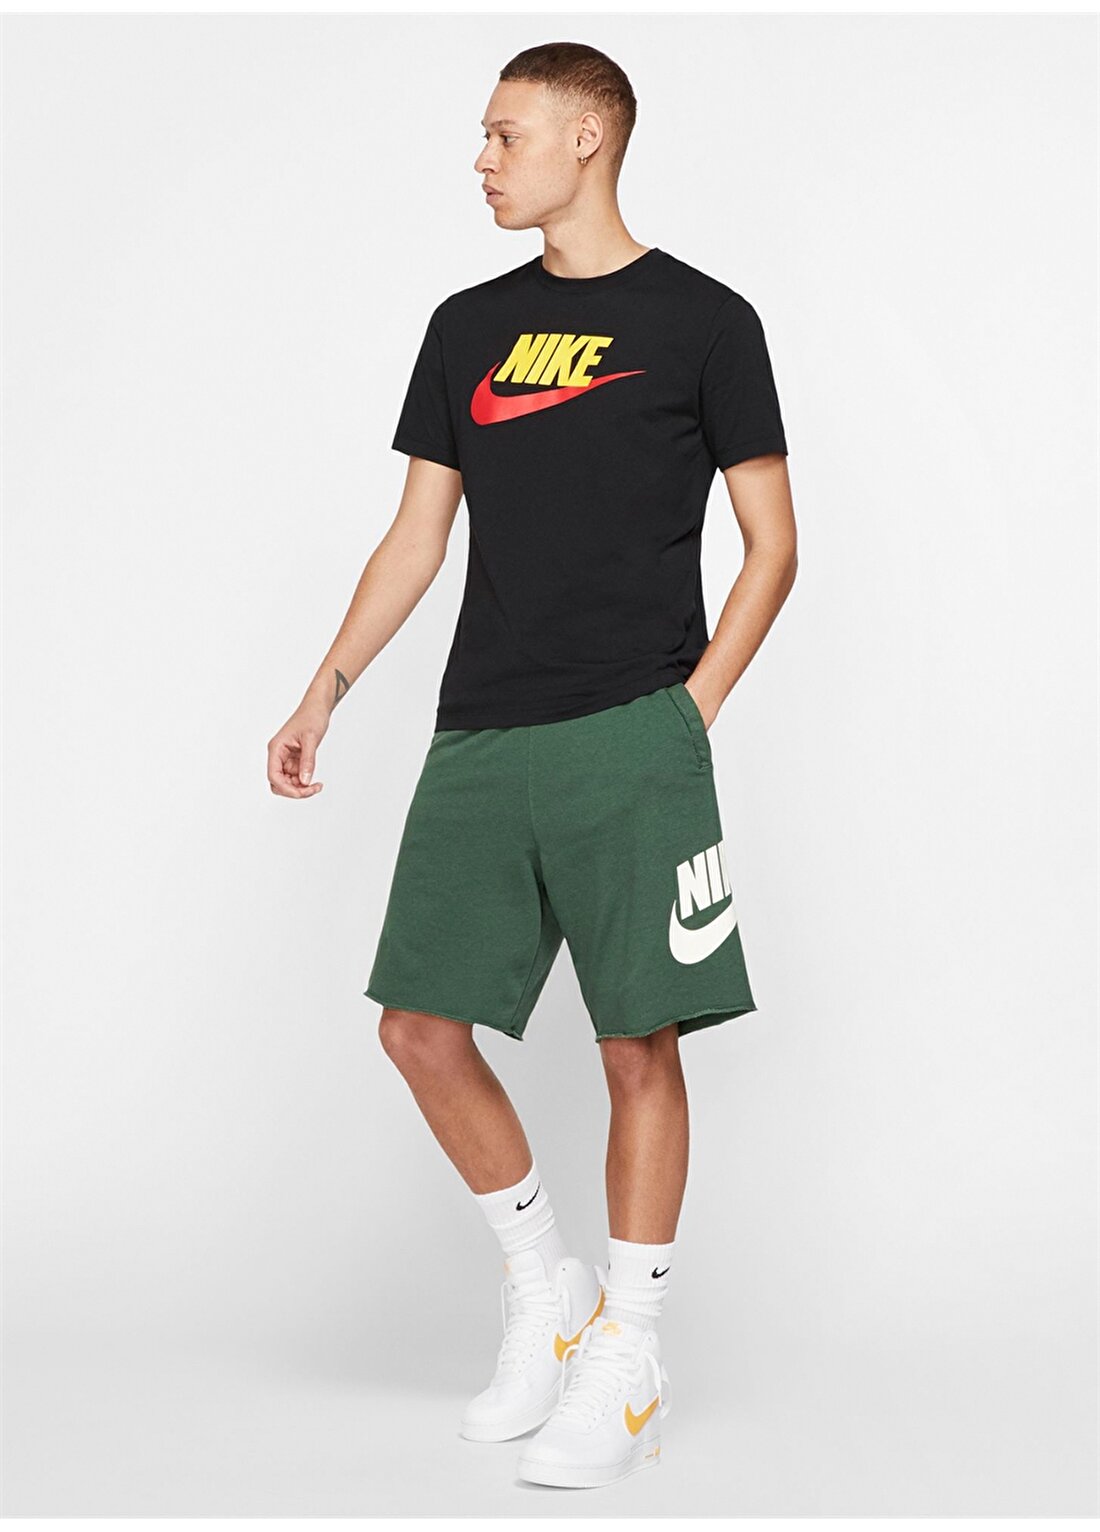 Nike Baskılı Siyah T-Shirt